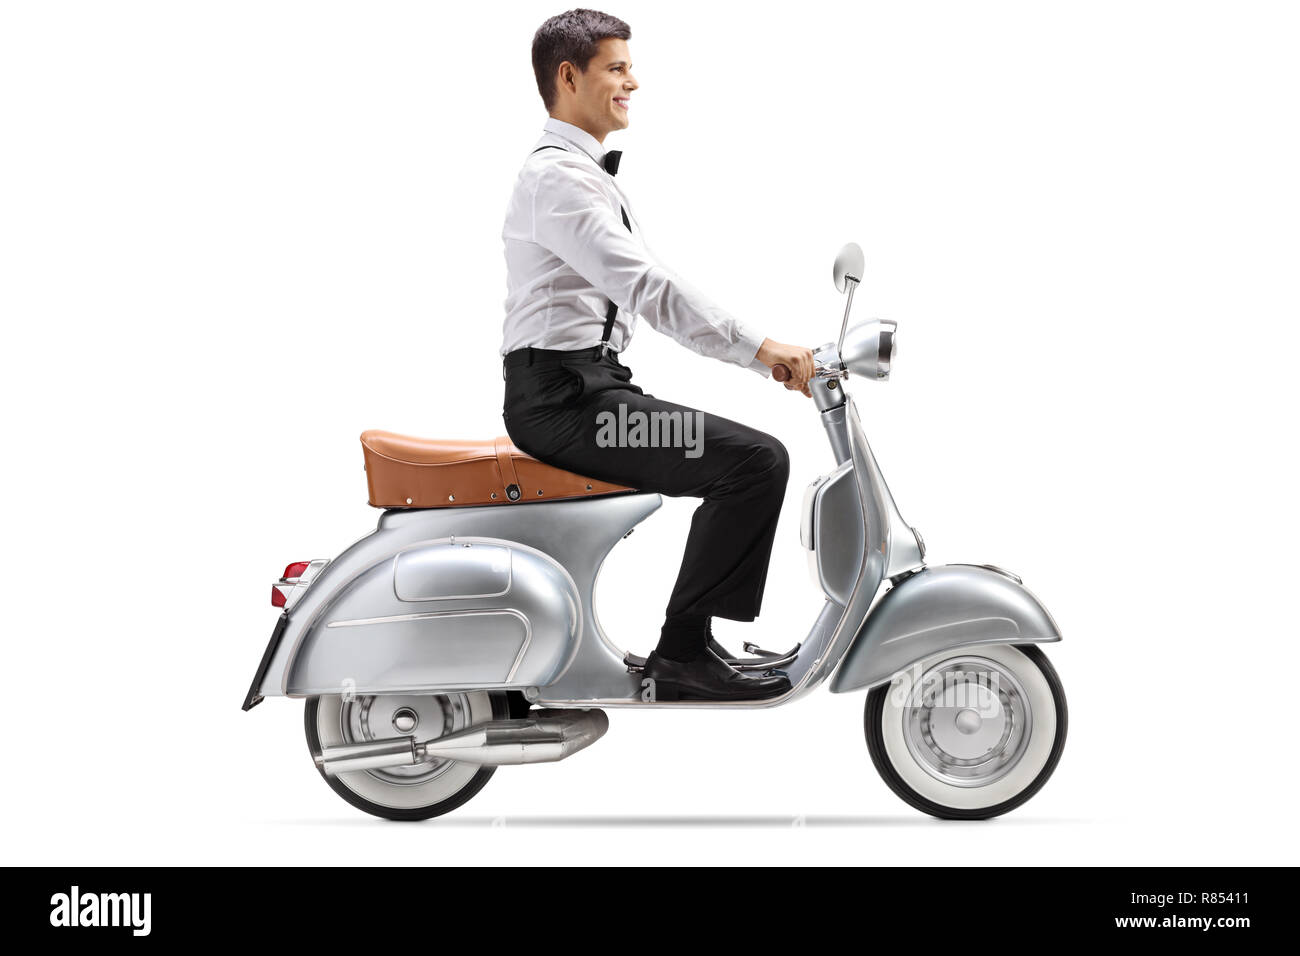 Volle Länge geschossen von einem jungen Mann in Smart Clothes reiten ein Vintage scooter auf weißem Hintergrund Stockfoto